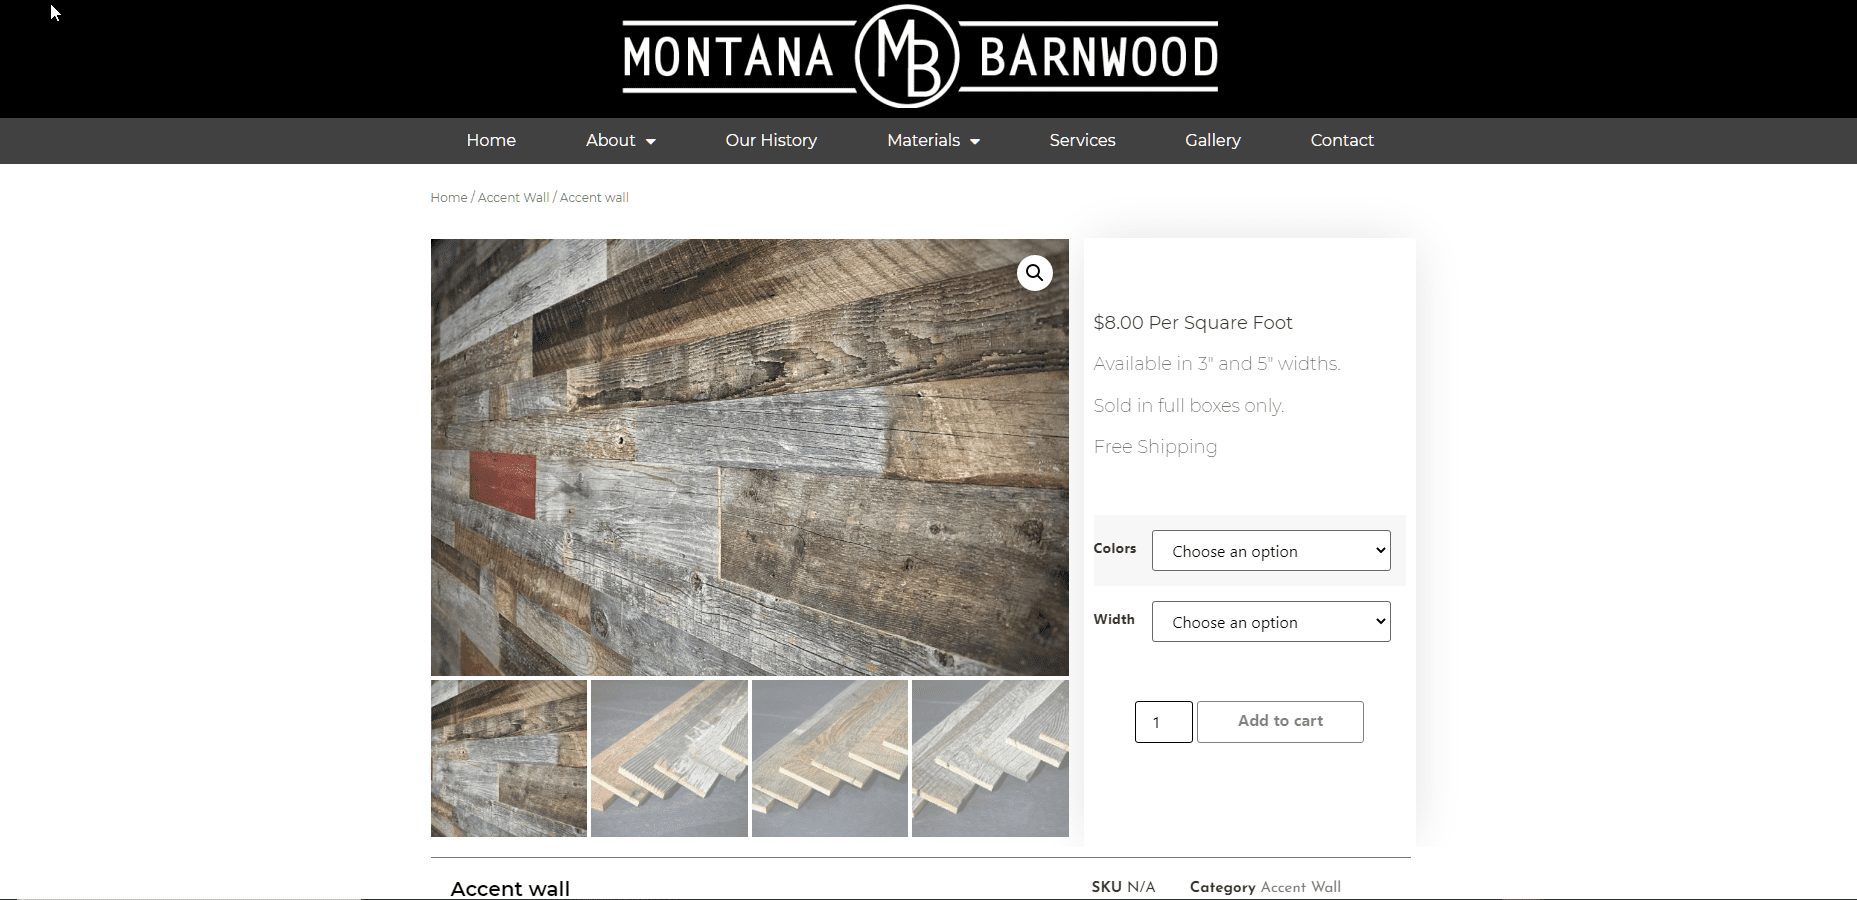 Montana Barnwood: Product